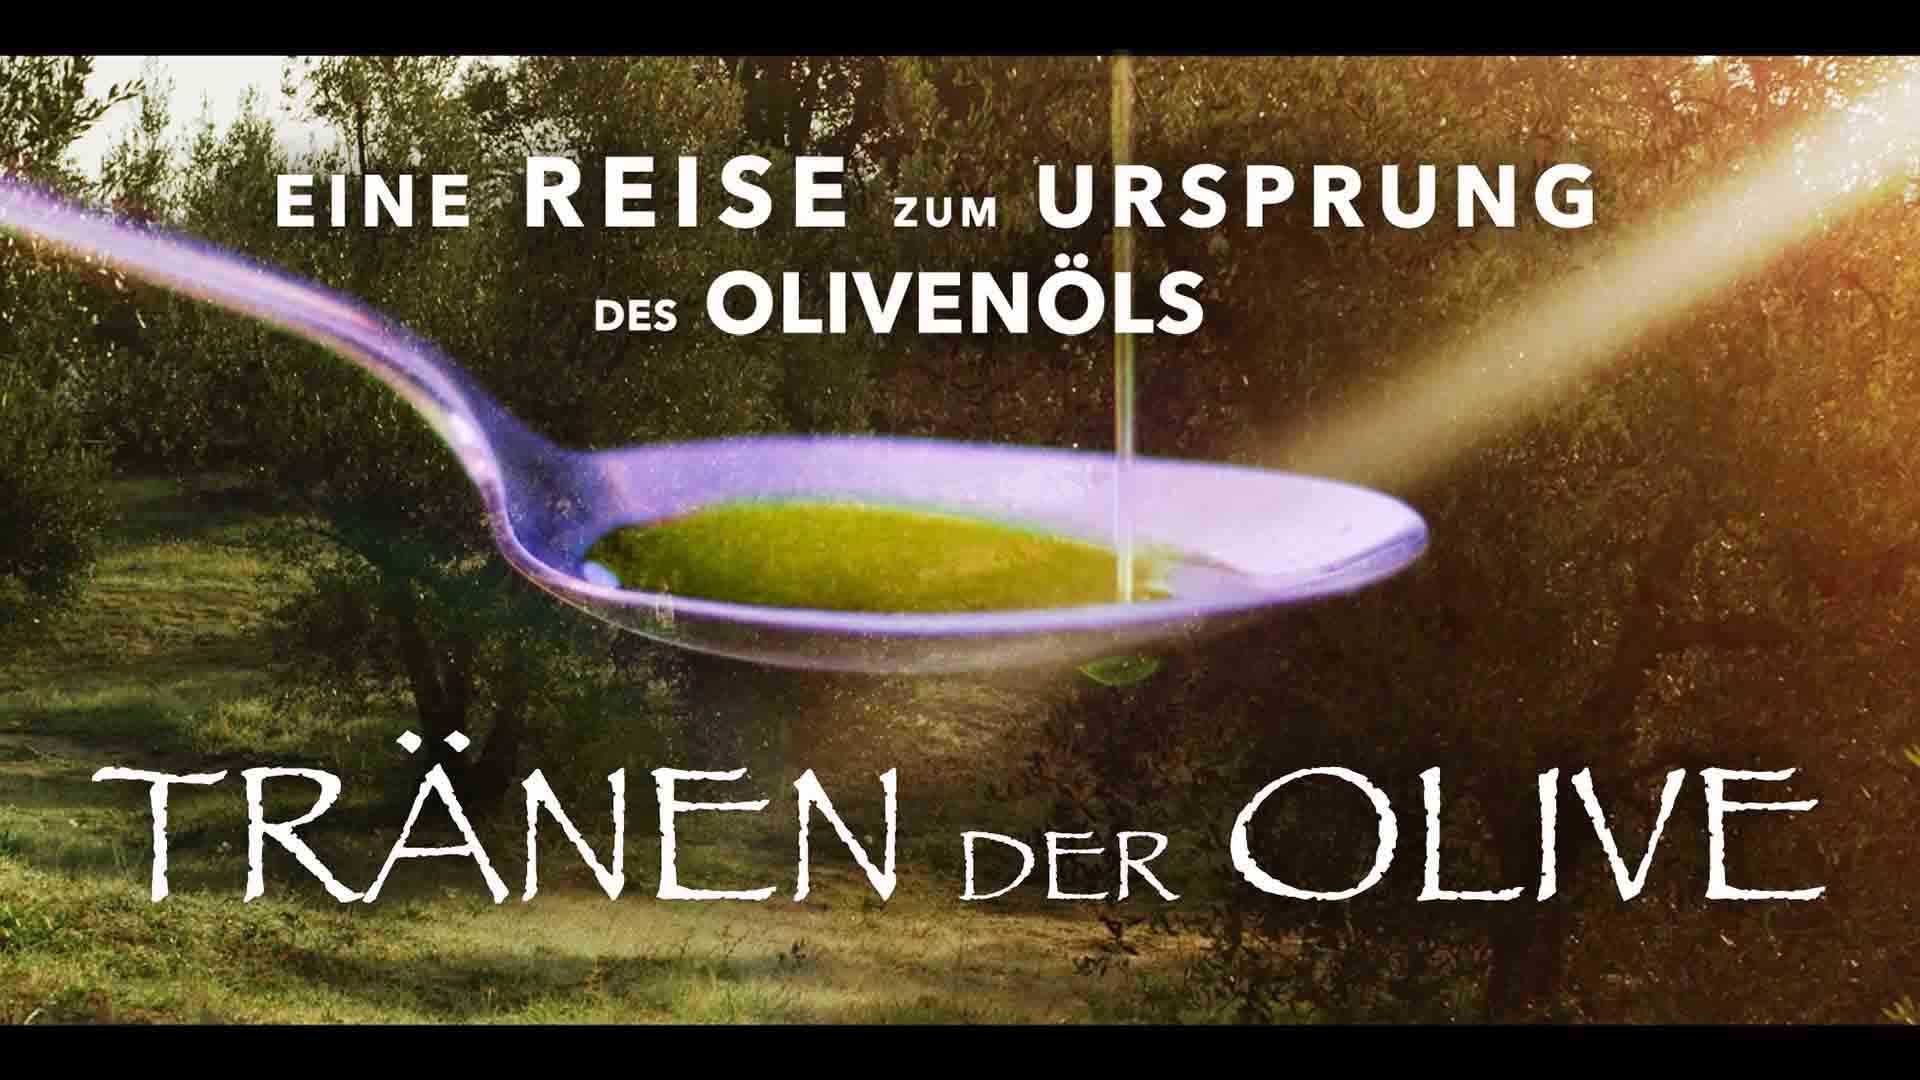 Tränen der Olive